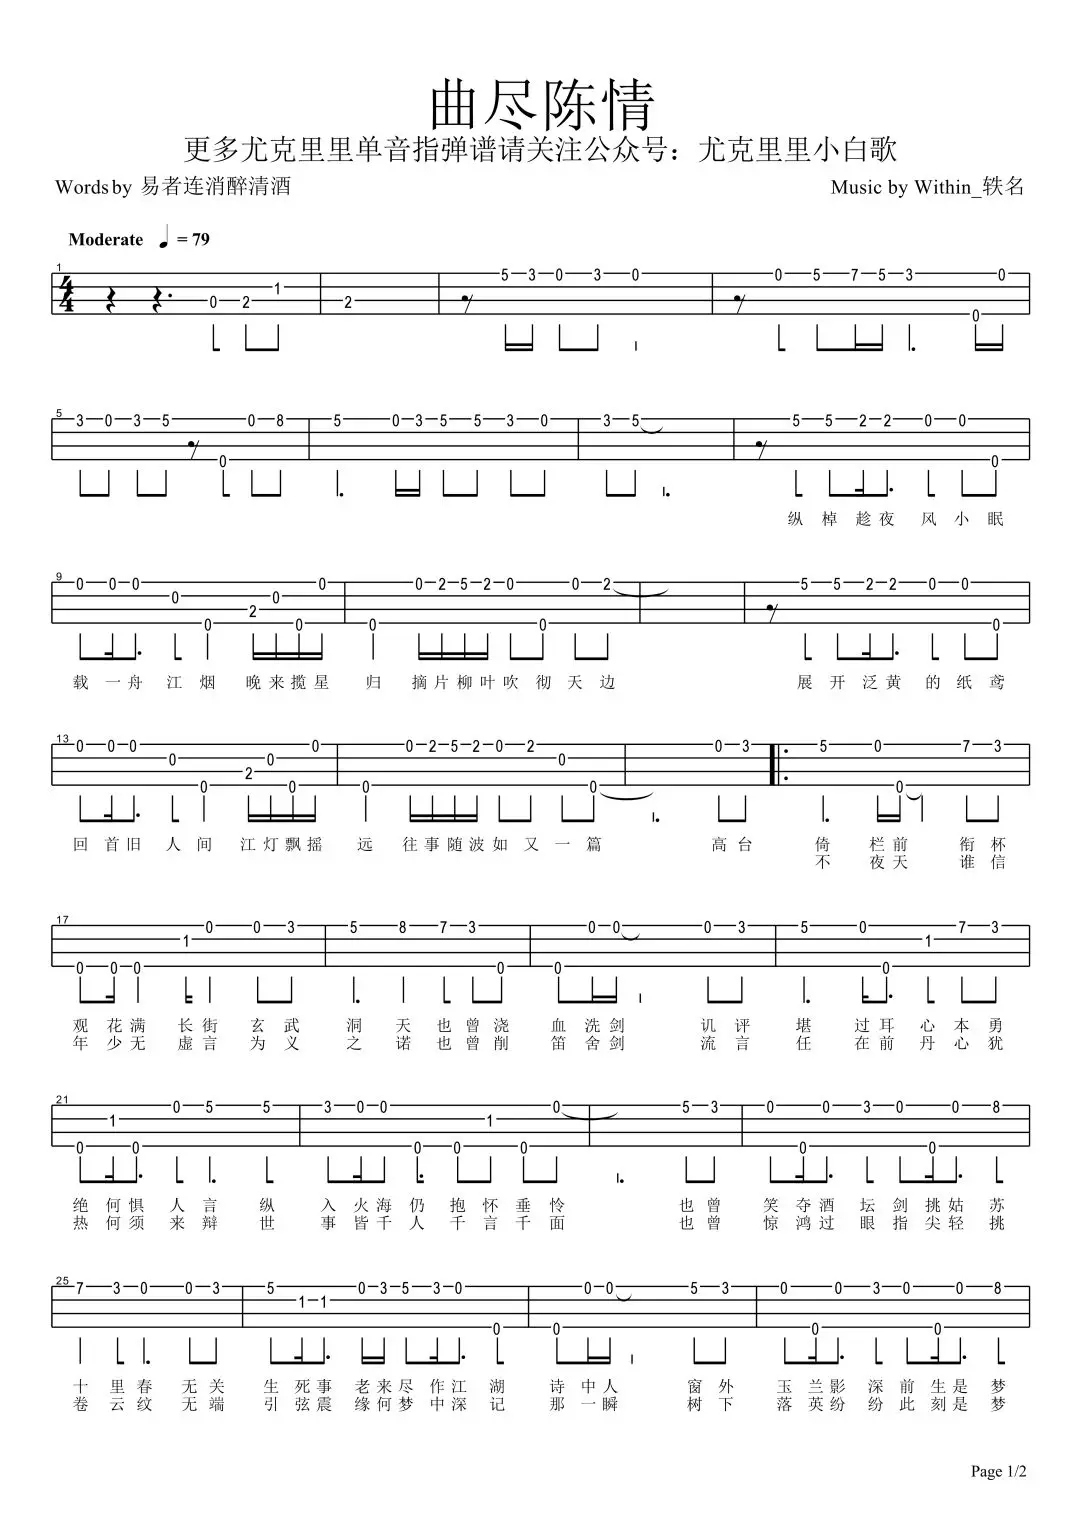 简单单音《曲尽陈情&不忘》ukulele指弹谱-陈情令-C大调音乐网